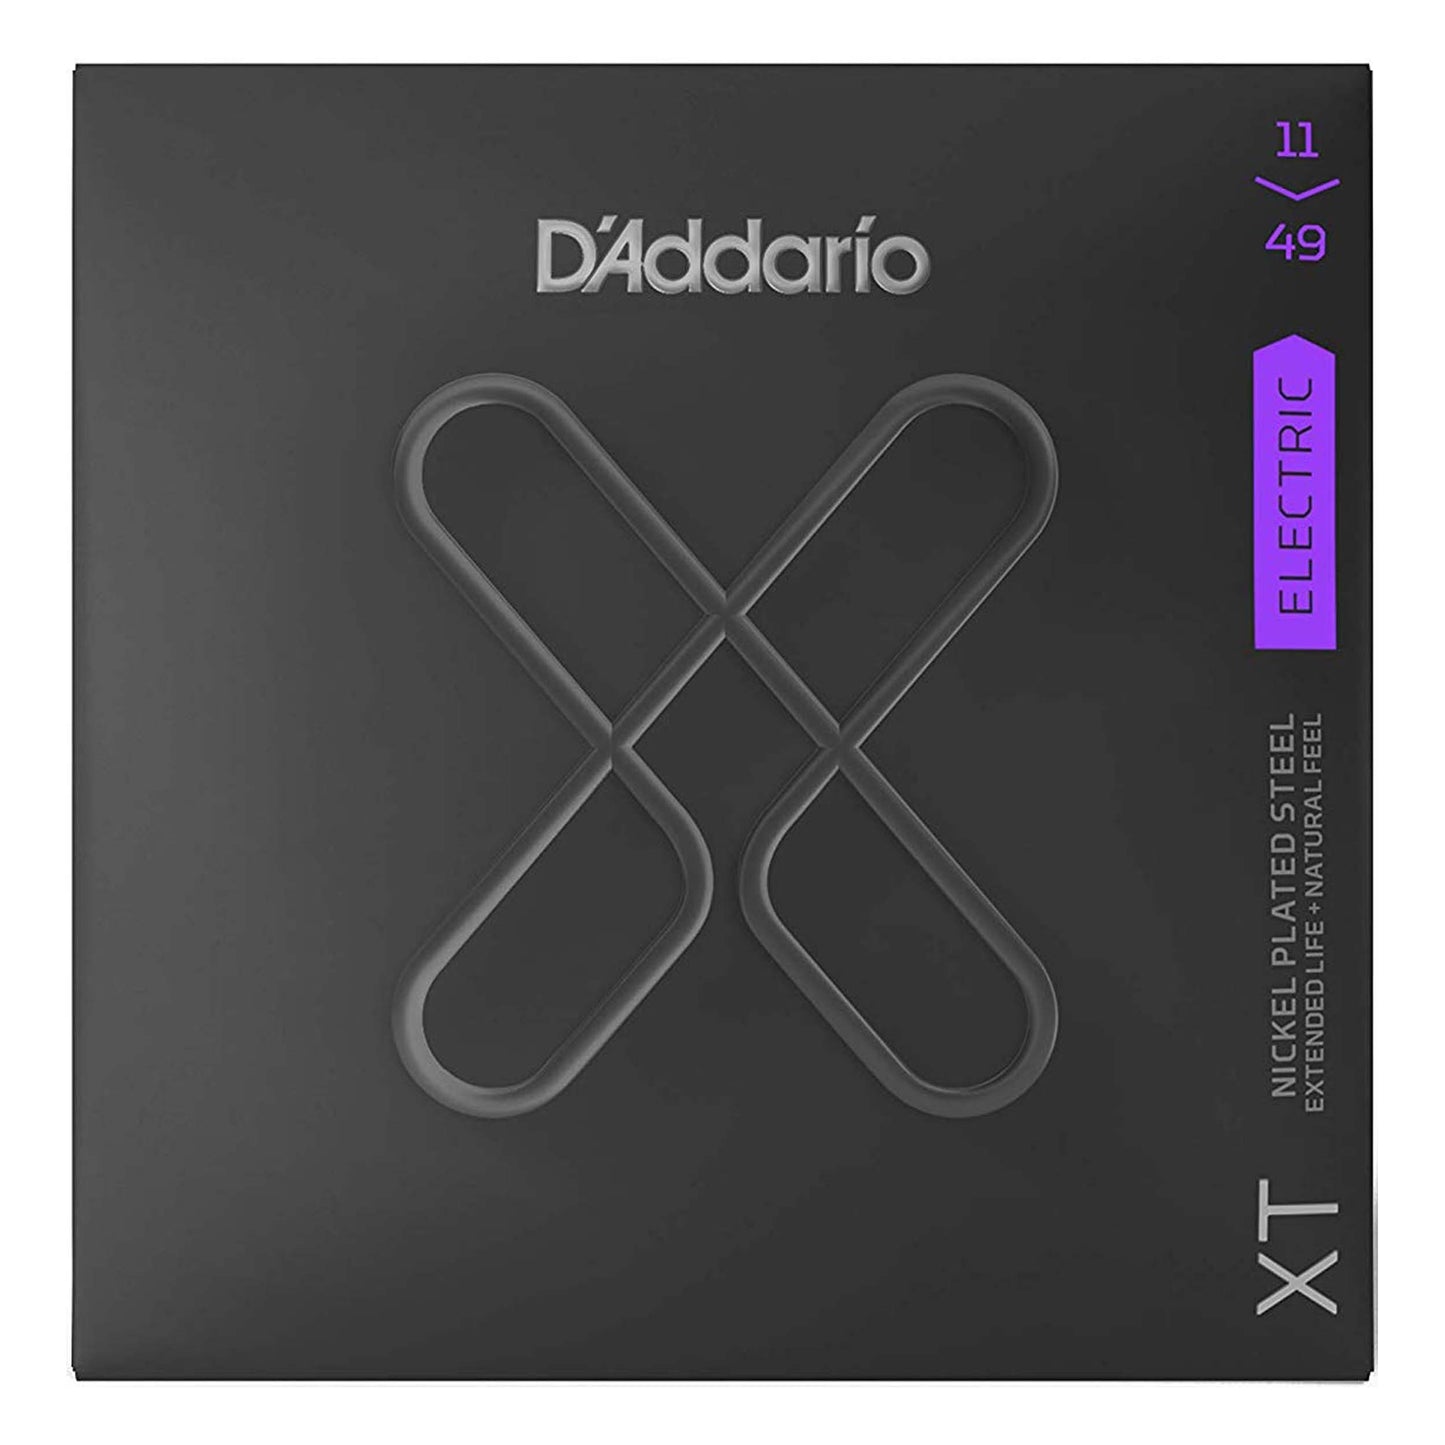 D'Addario XT Nickel Plated Steel Electric Guitar Strings, Medium (11-49)